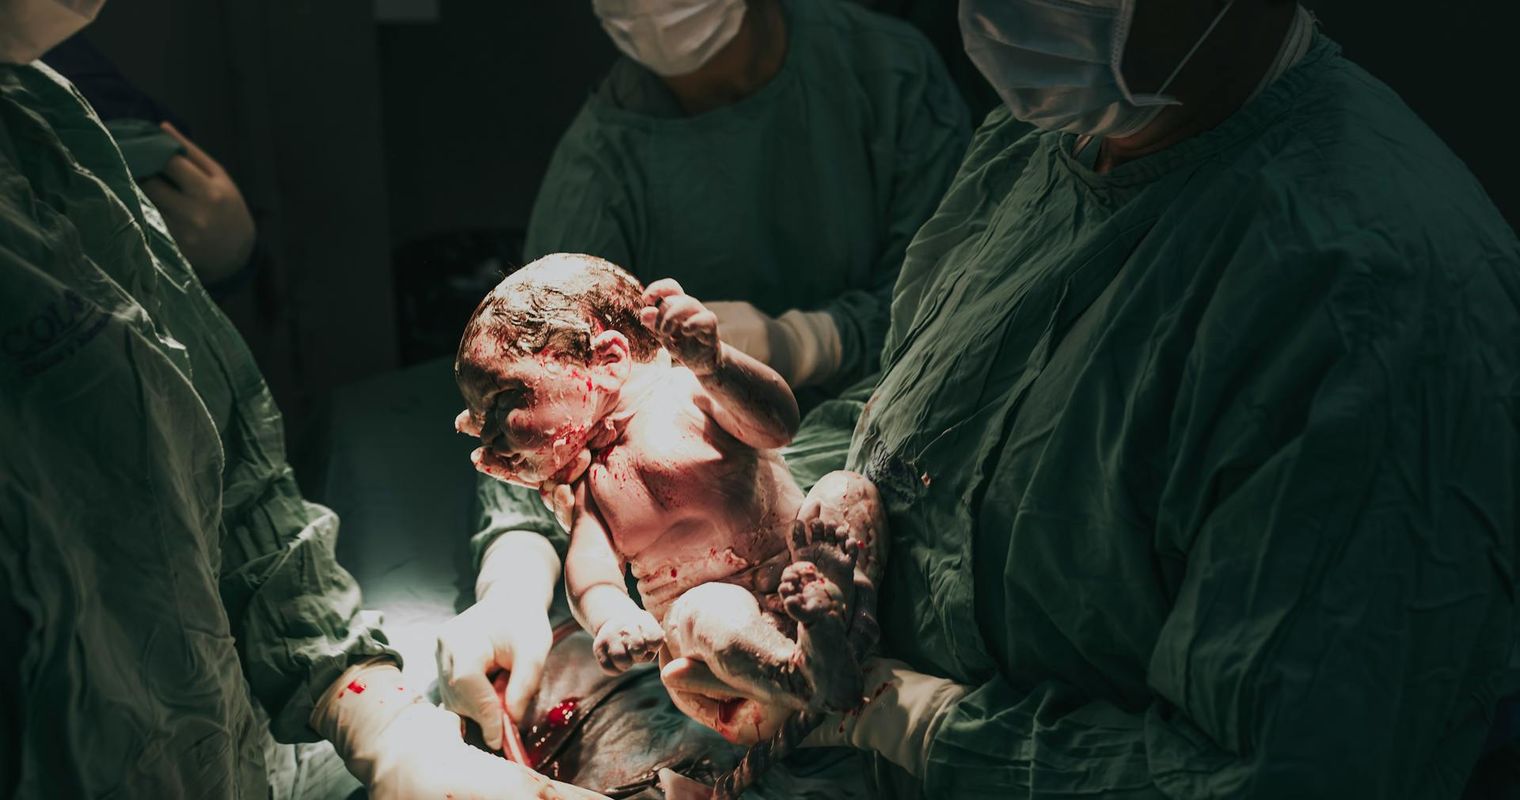 Realität Kaiserschnitt: So eine Angst hatte ich noch nie